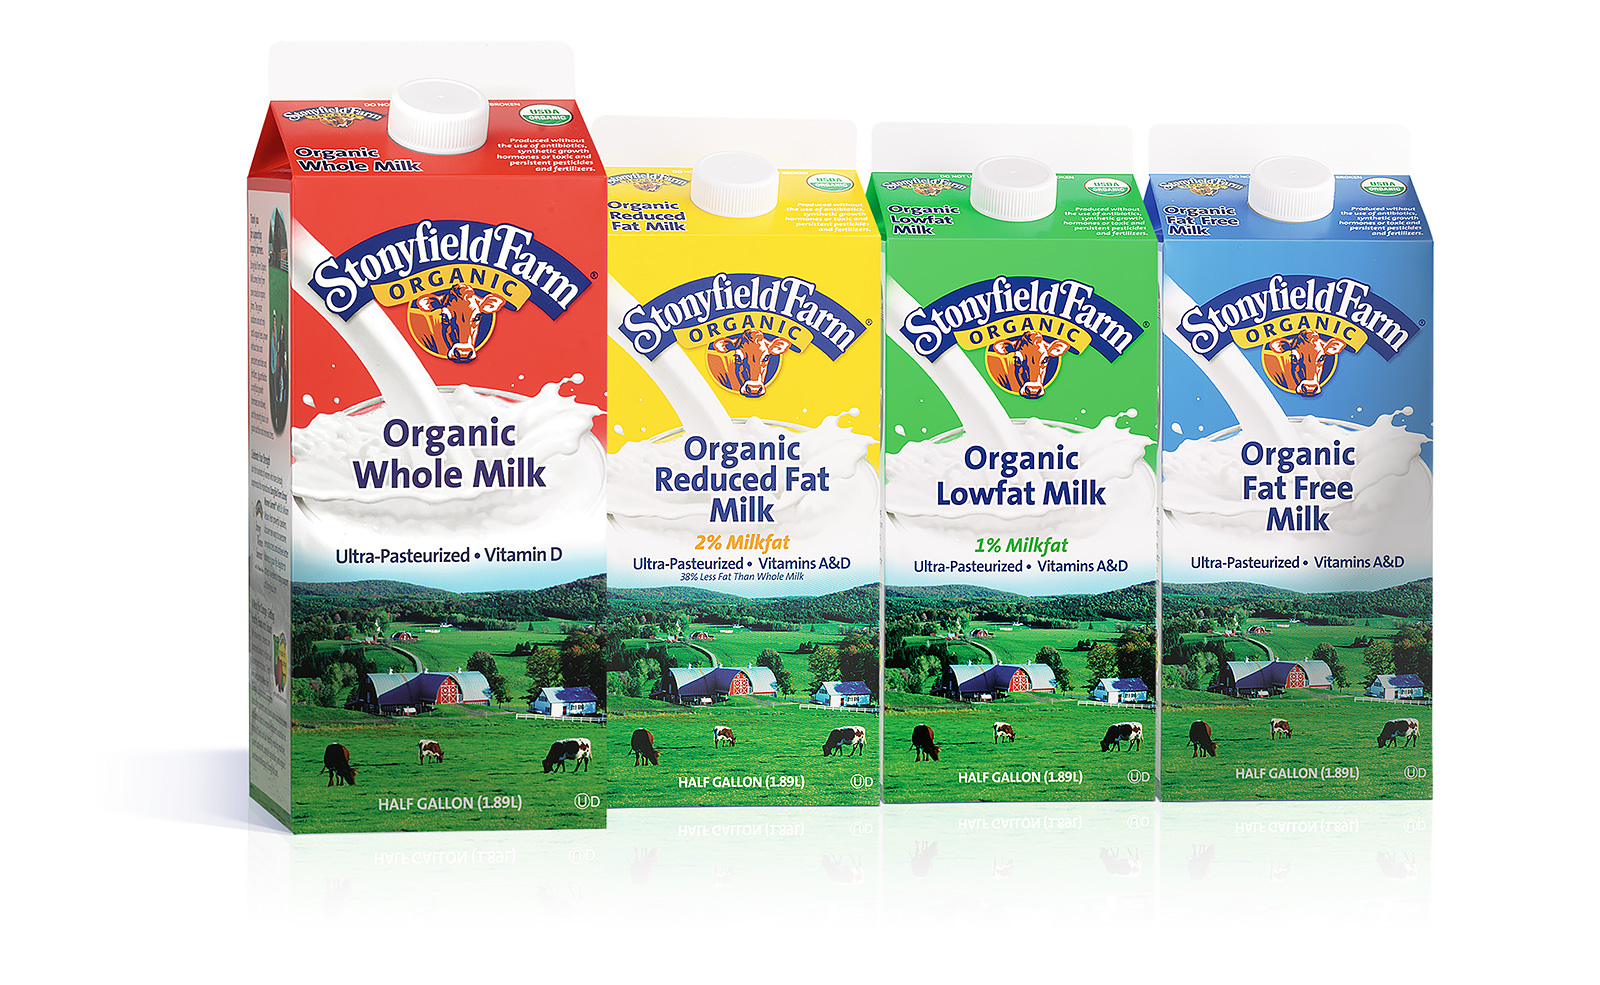 stonyfield milk packaging